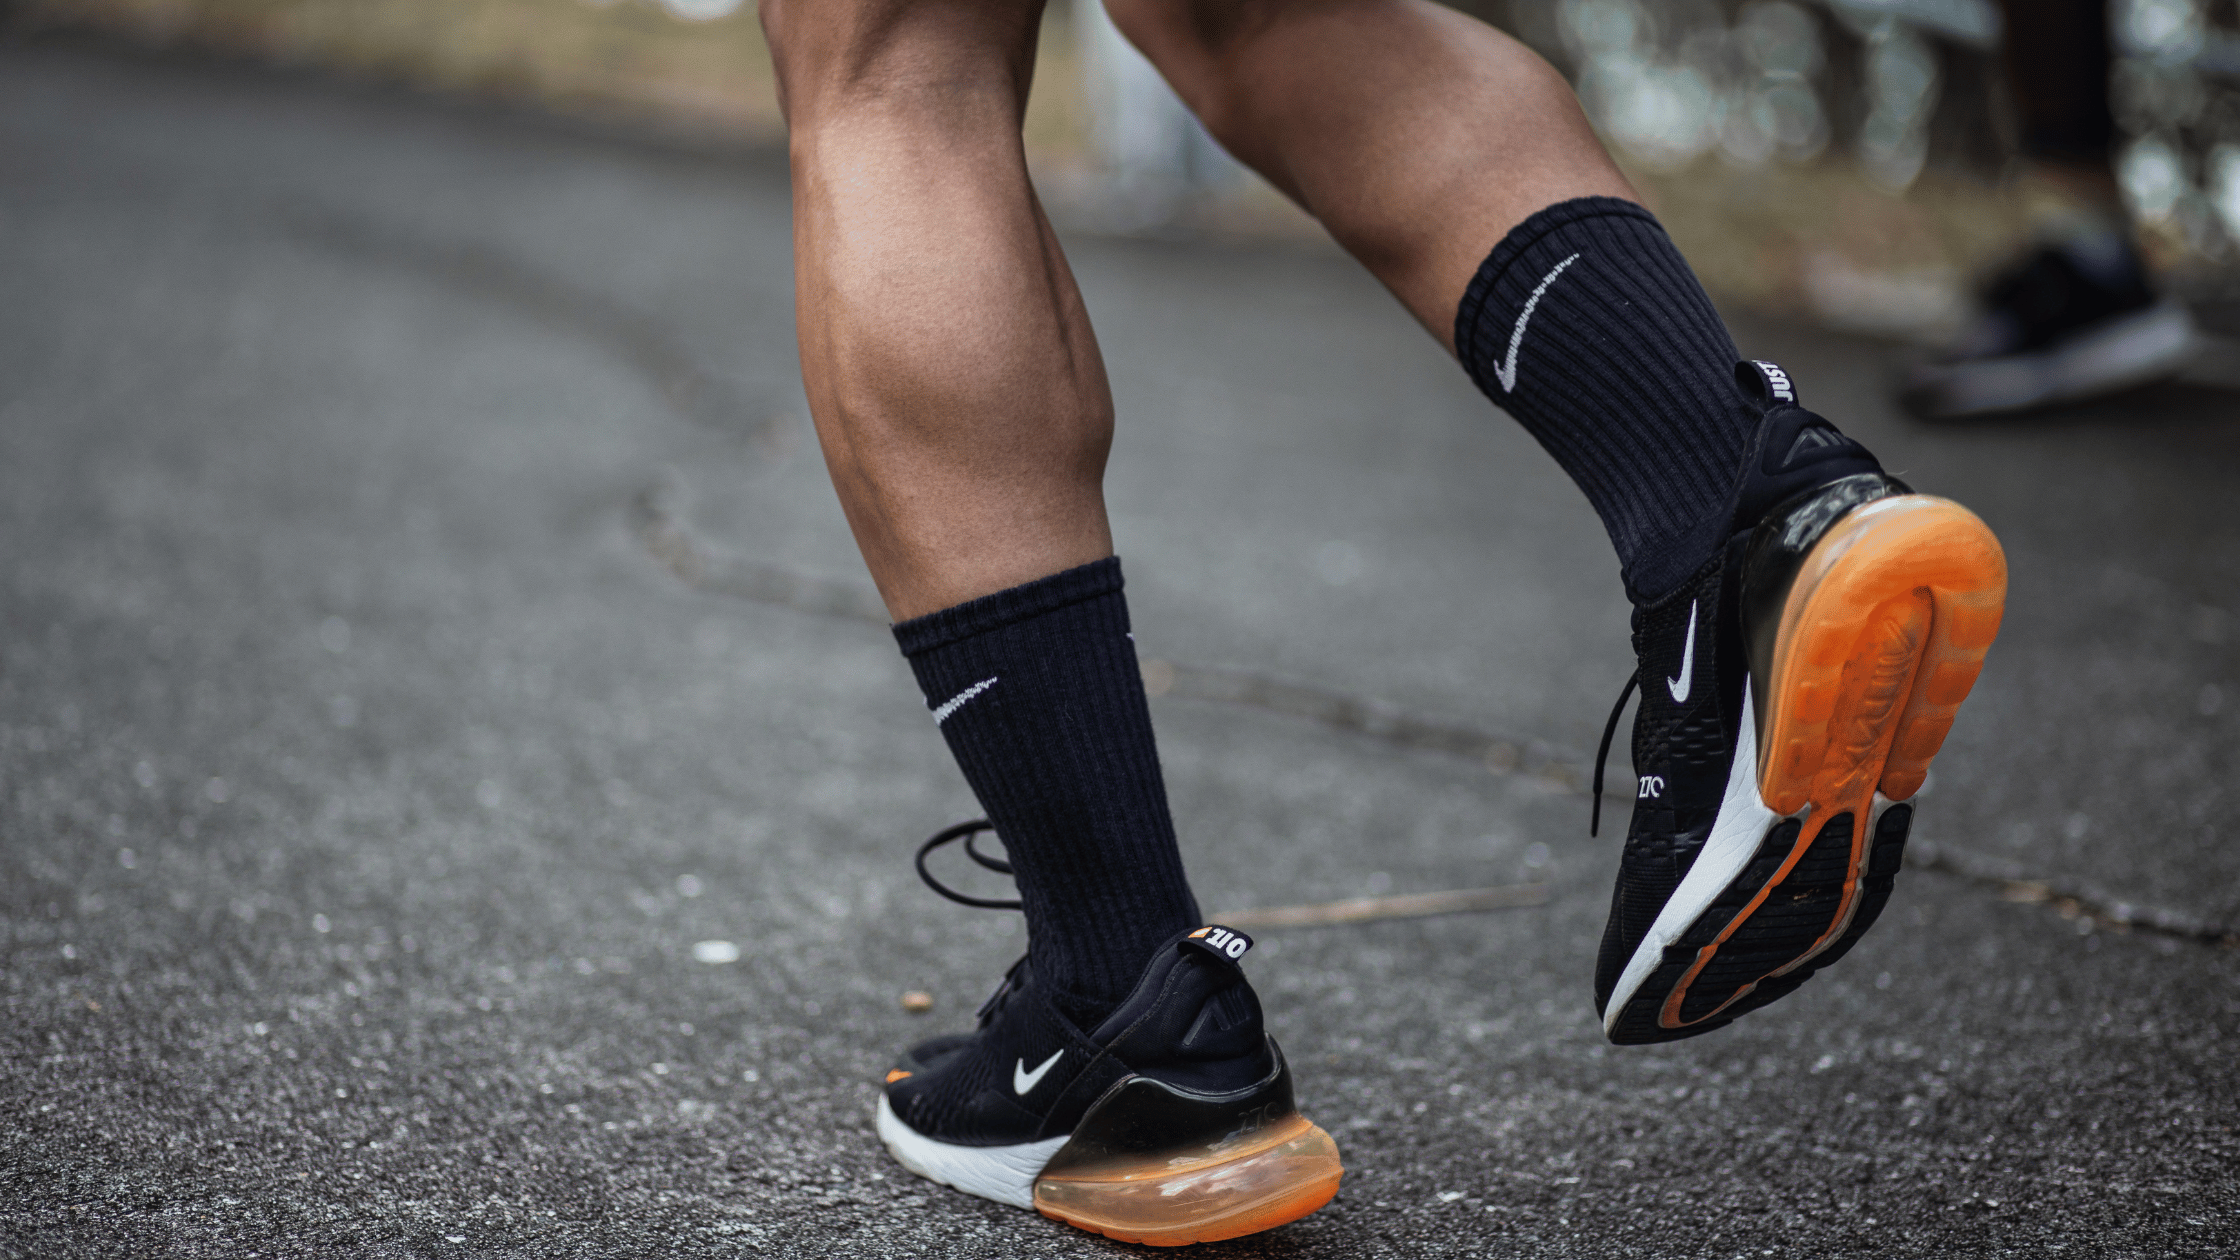 The 7 Best Anti Blister Running Socks for Marathon Runners